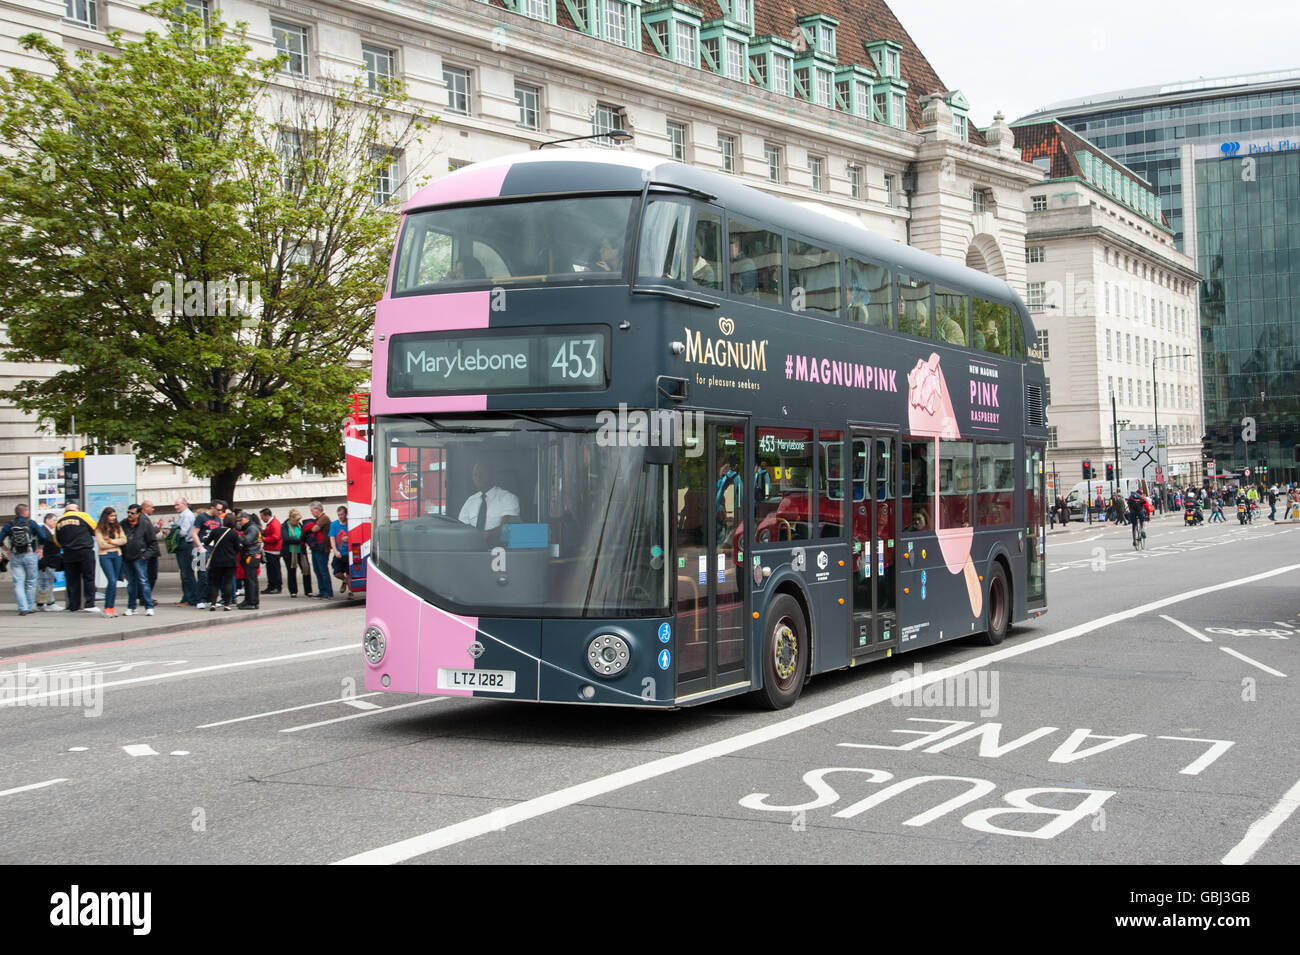 A Londra i nuovi autobus Routemaster a Marylebone con rosa e nero Magnum unità pubblicitaria sul Westminster Bridge London, Regno Unito Foto Stock